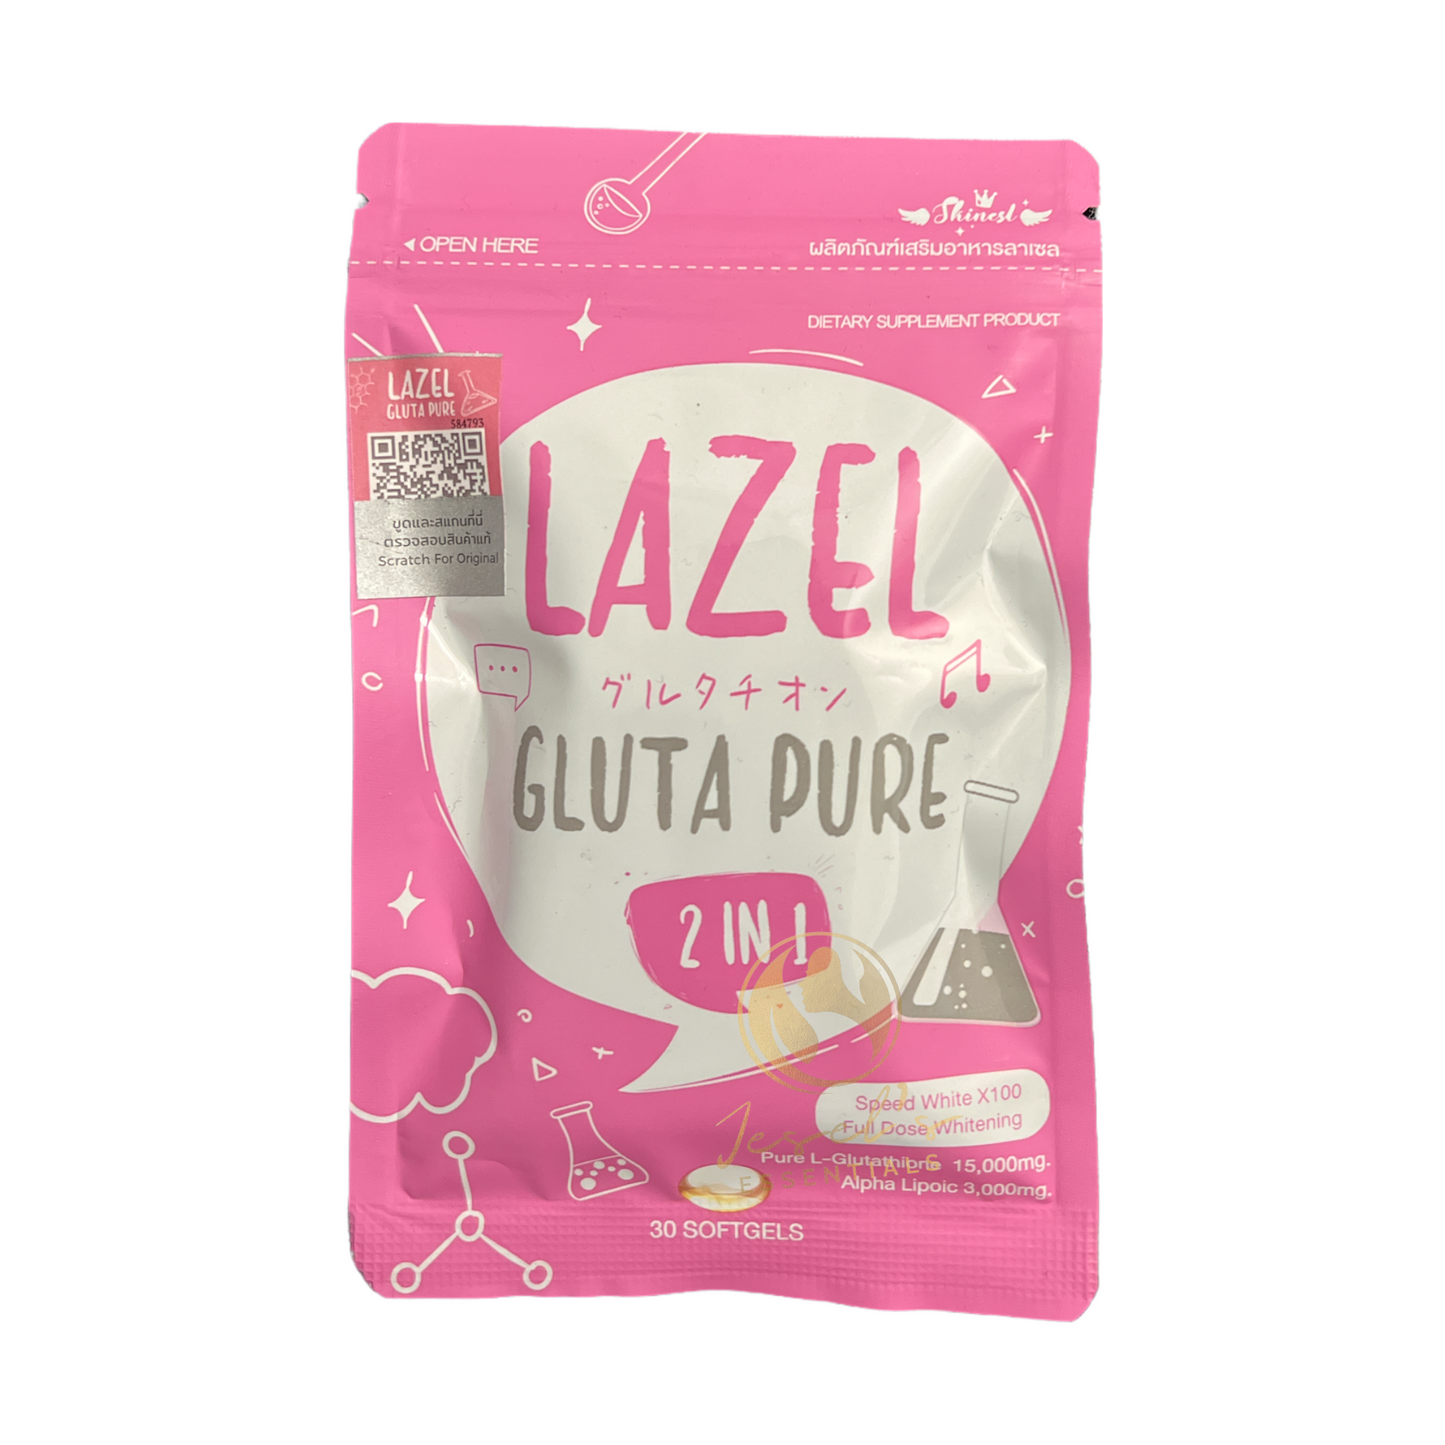 Lazel Gluta Pure 2 in 1 L-Glutathione & Alpha Lipoic Acid - 30 Soft Gel